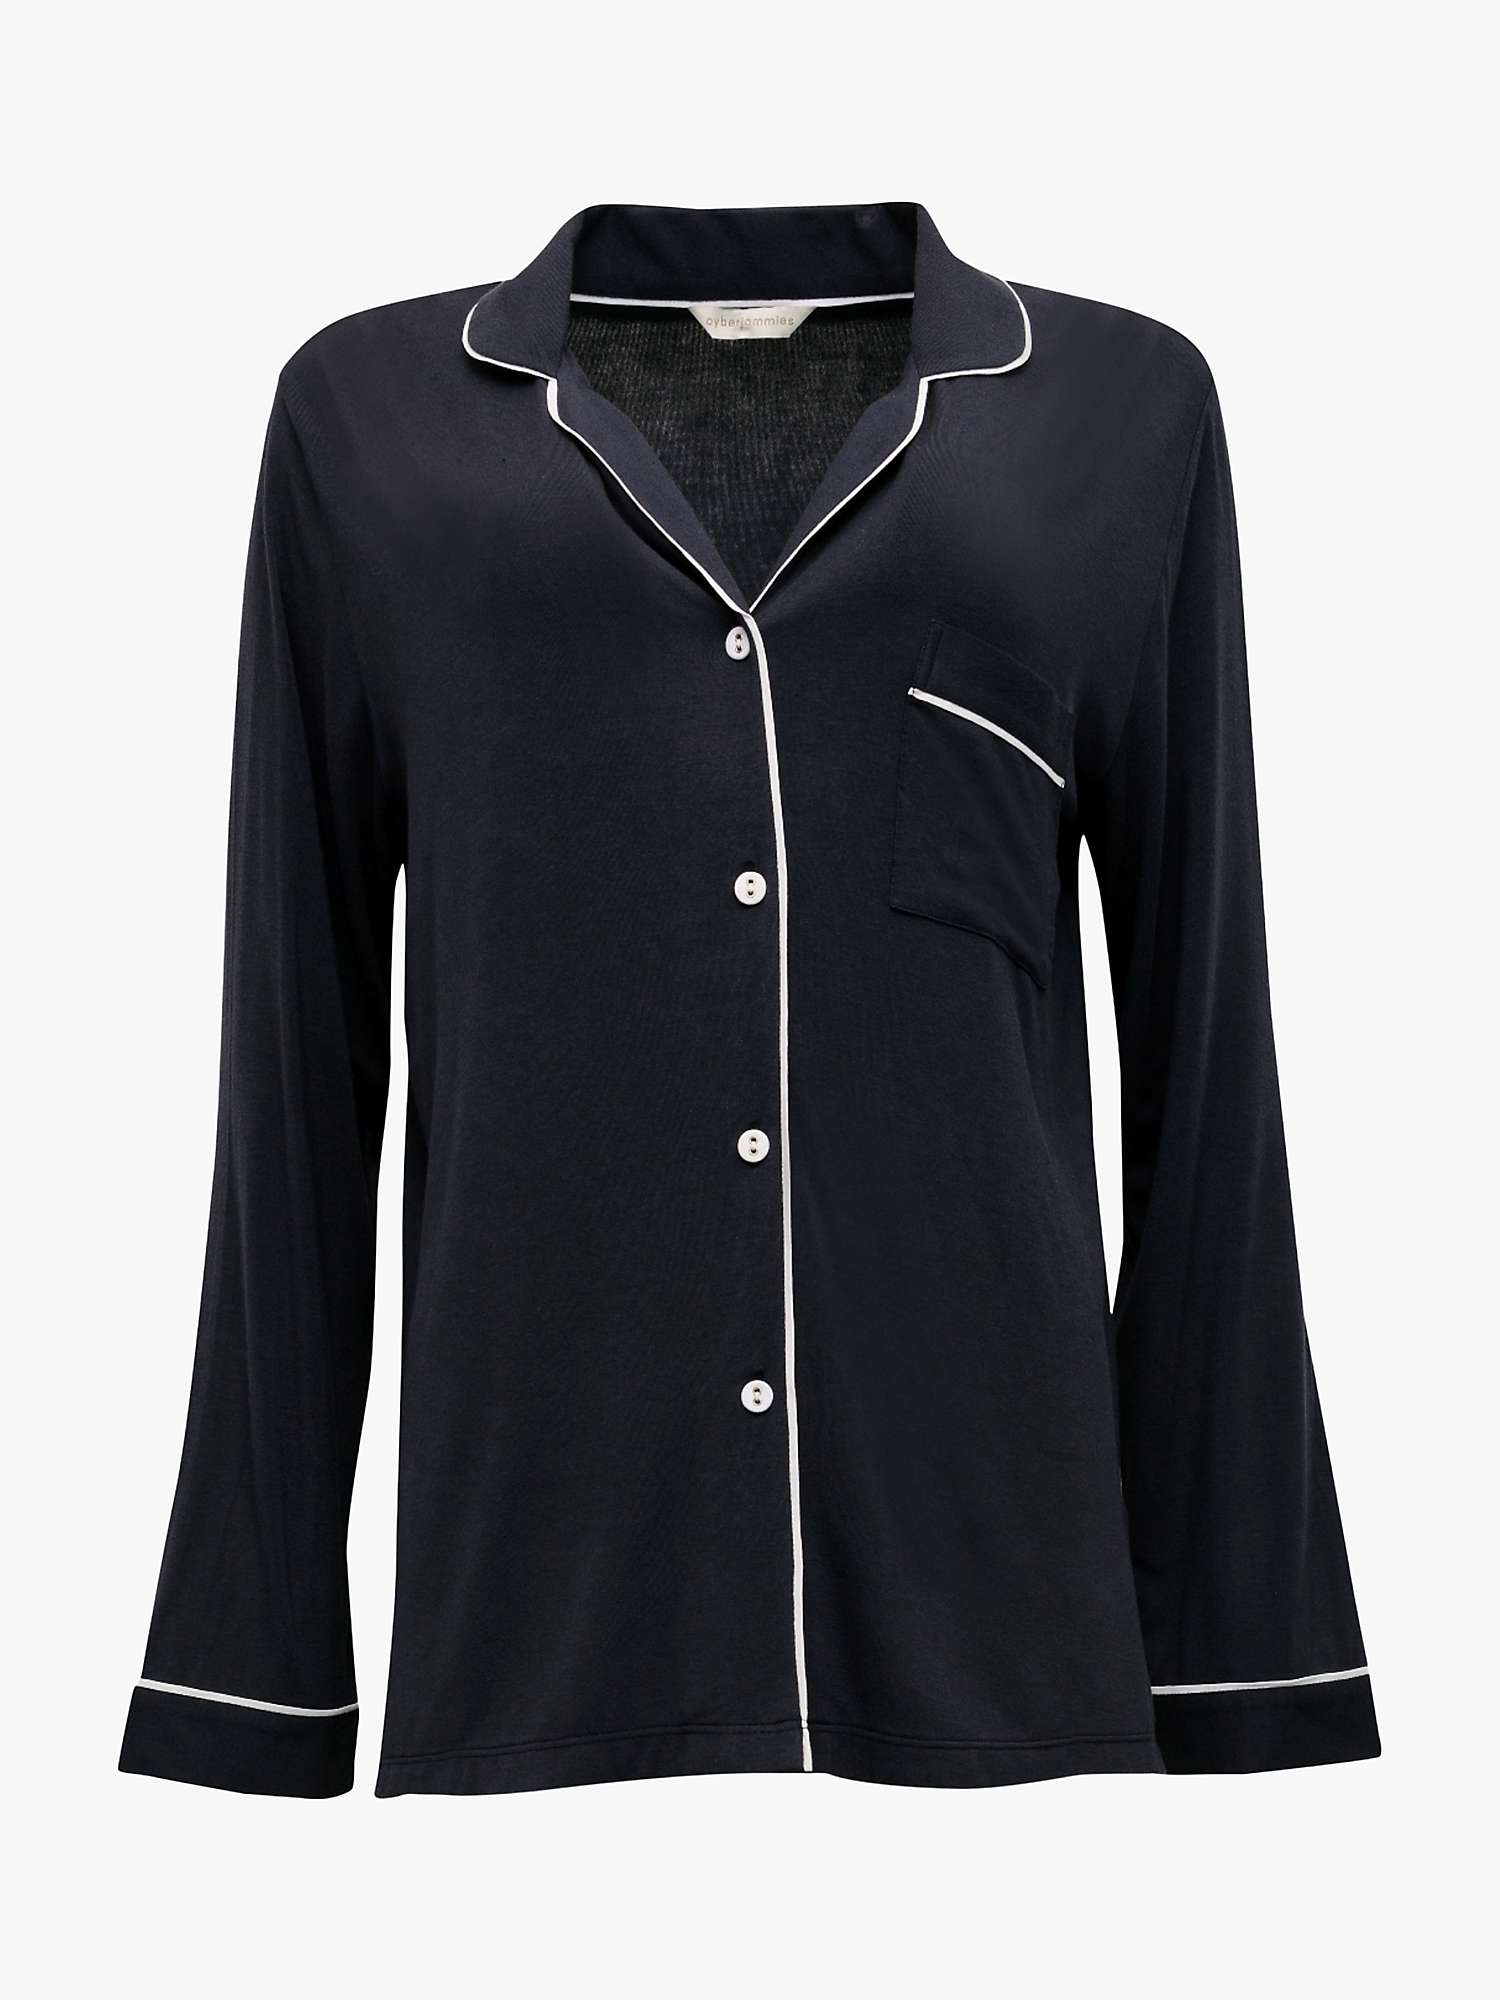 Buy Cyberjammies Nicole Long Sleeve Pyjama Top, Charcoal Online at johnlewis.com